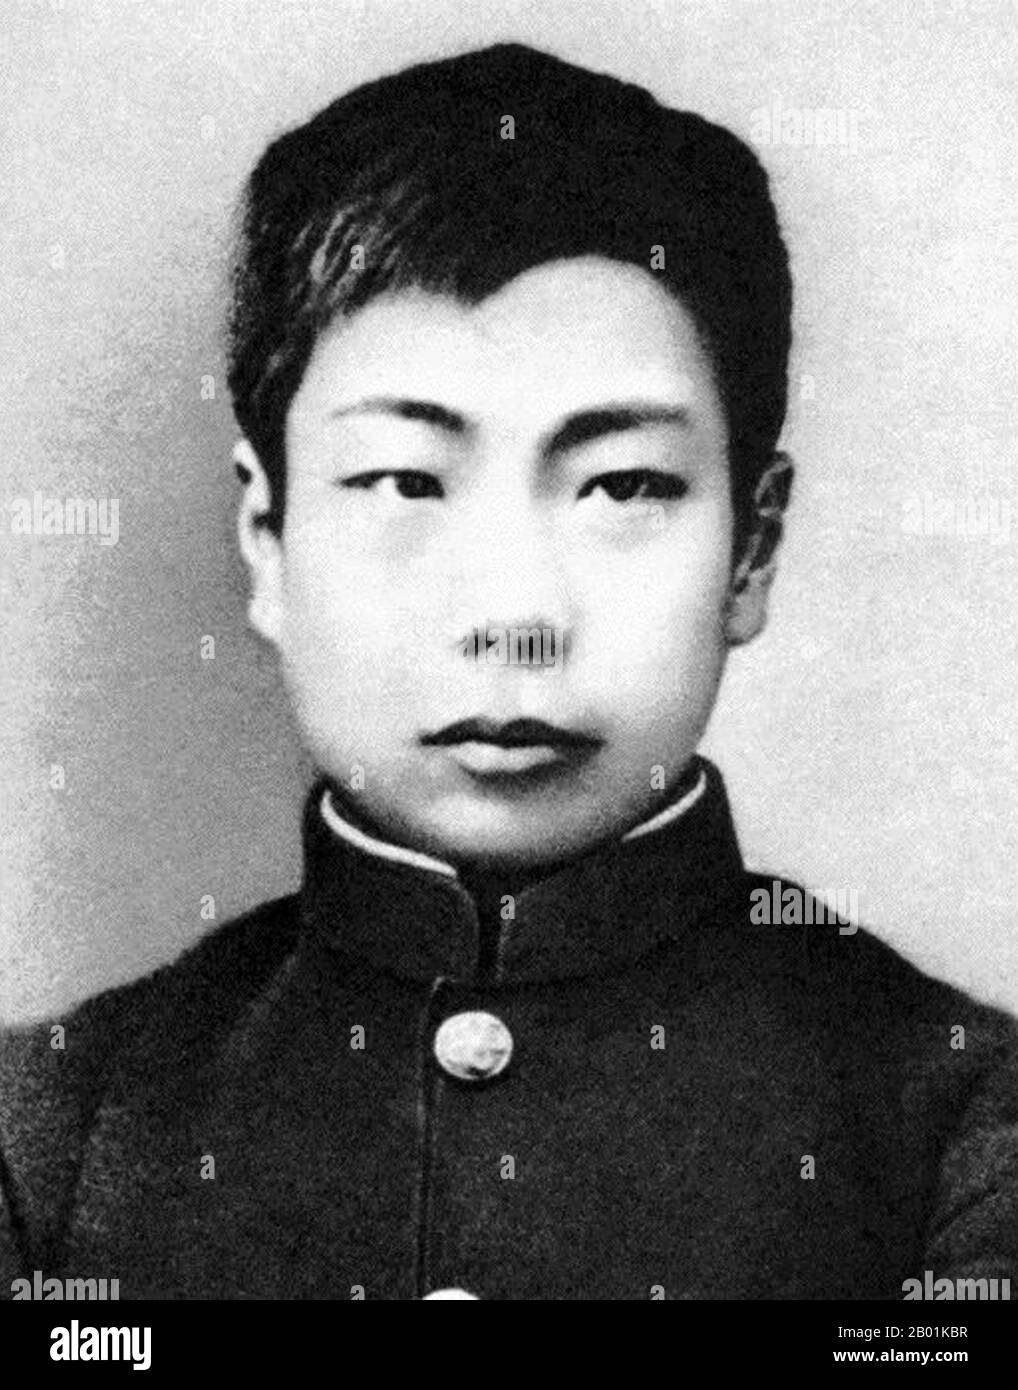 Cina: Lo scrittore cinese Lu Xun (25 settembre 1881 - 19 ottobre 1936) dopo aver appena tagliato la sua treccia manciù per simboleggiare la sua resistenza all'oppressione nazionale, 1903. Lu Xun (o Lu Hsun), era lo pseudonimo di Zhou Shuren (Chou Shu-jen), uno dei maggiori scrittori cinesi del XX secolo. Considerato da molti come il fondatore della letteratura cinese moderna, scrisse in baihua (il vernacolare) così come in cinese classico. Lu Xun era uno scrittore di racconti, editore, traduttore, critico, saggista e poeta. Negli anni '1930 divenne il capo della Lega cinese degli scrittori di sinistra a Shanghai. Foto Stock